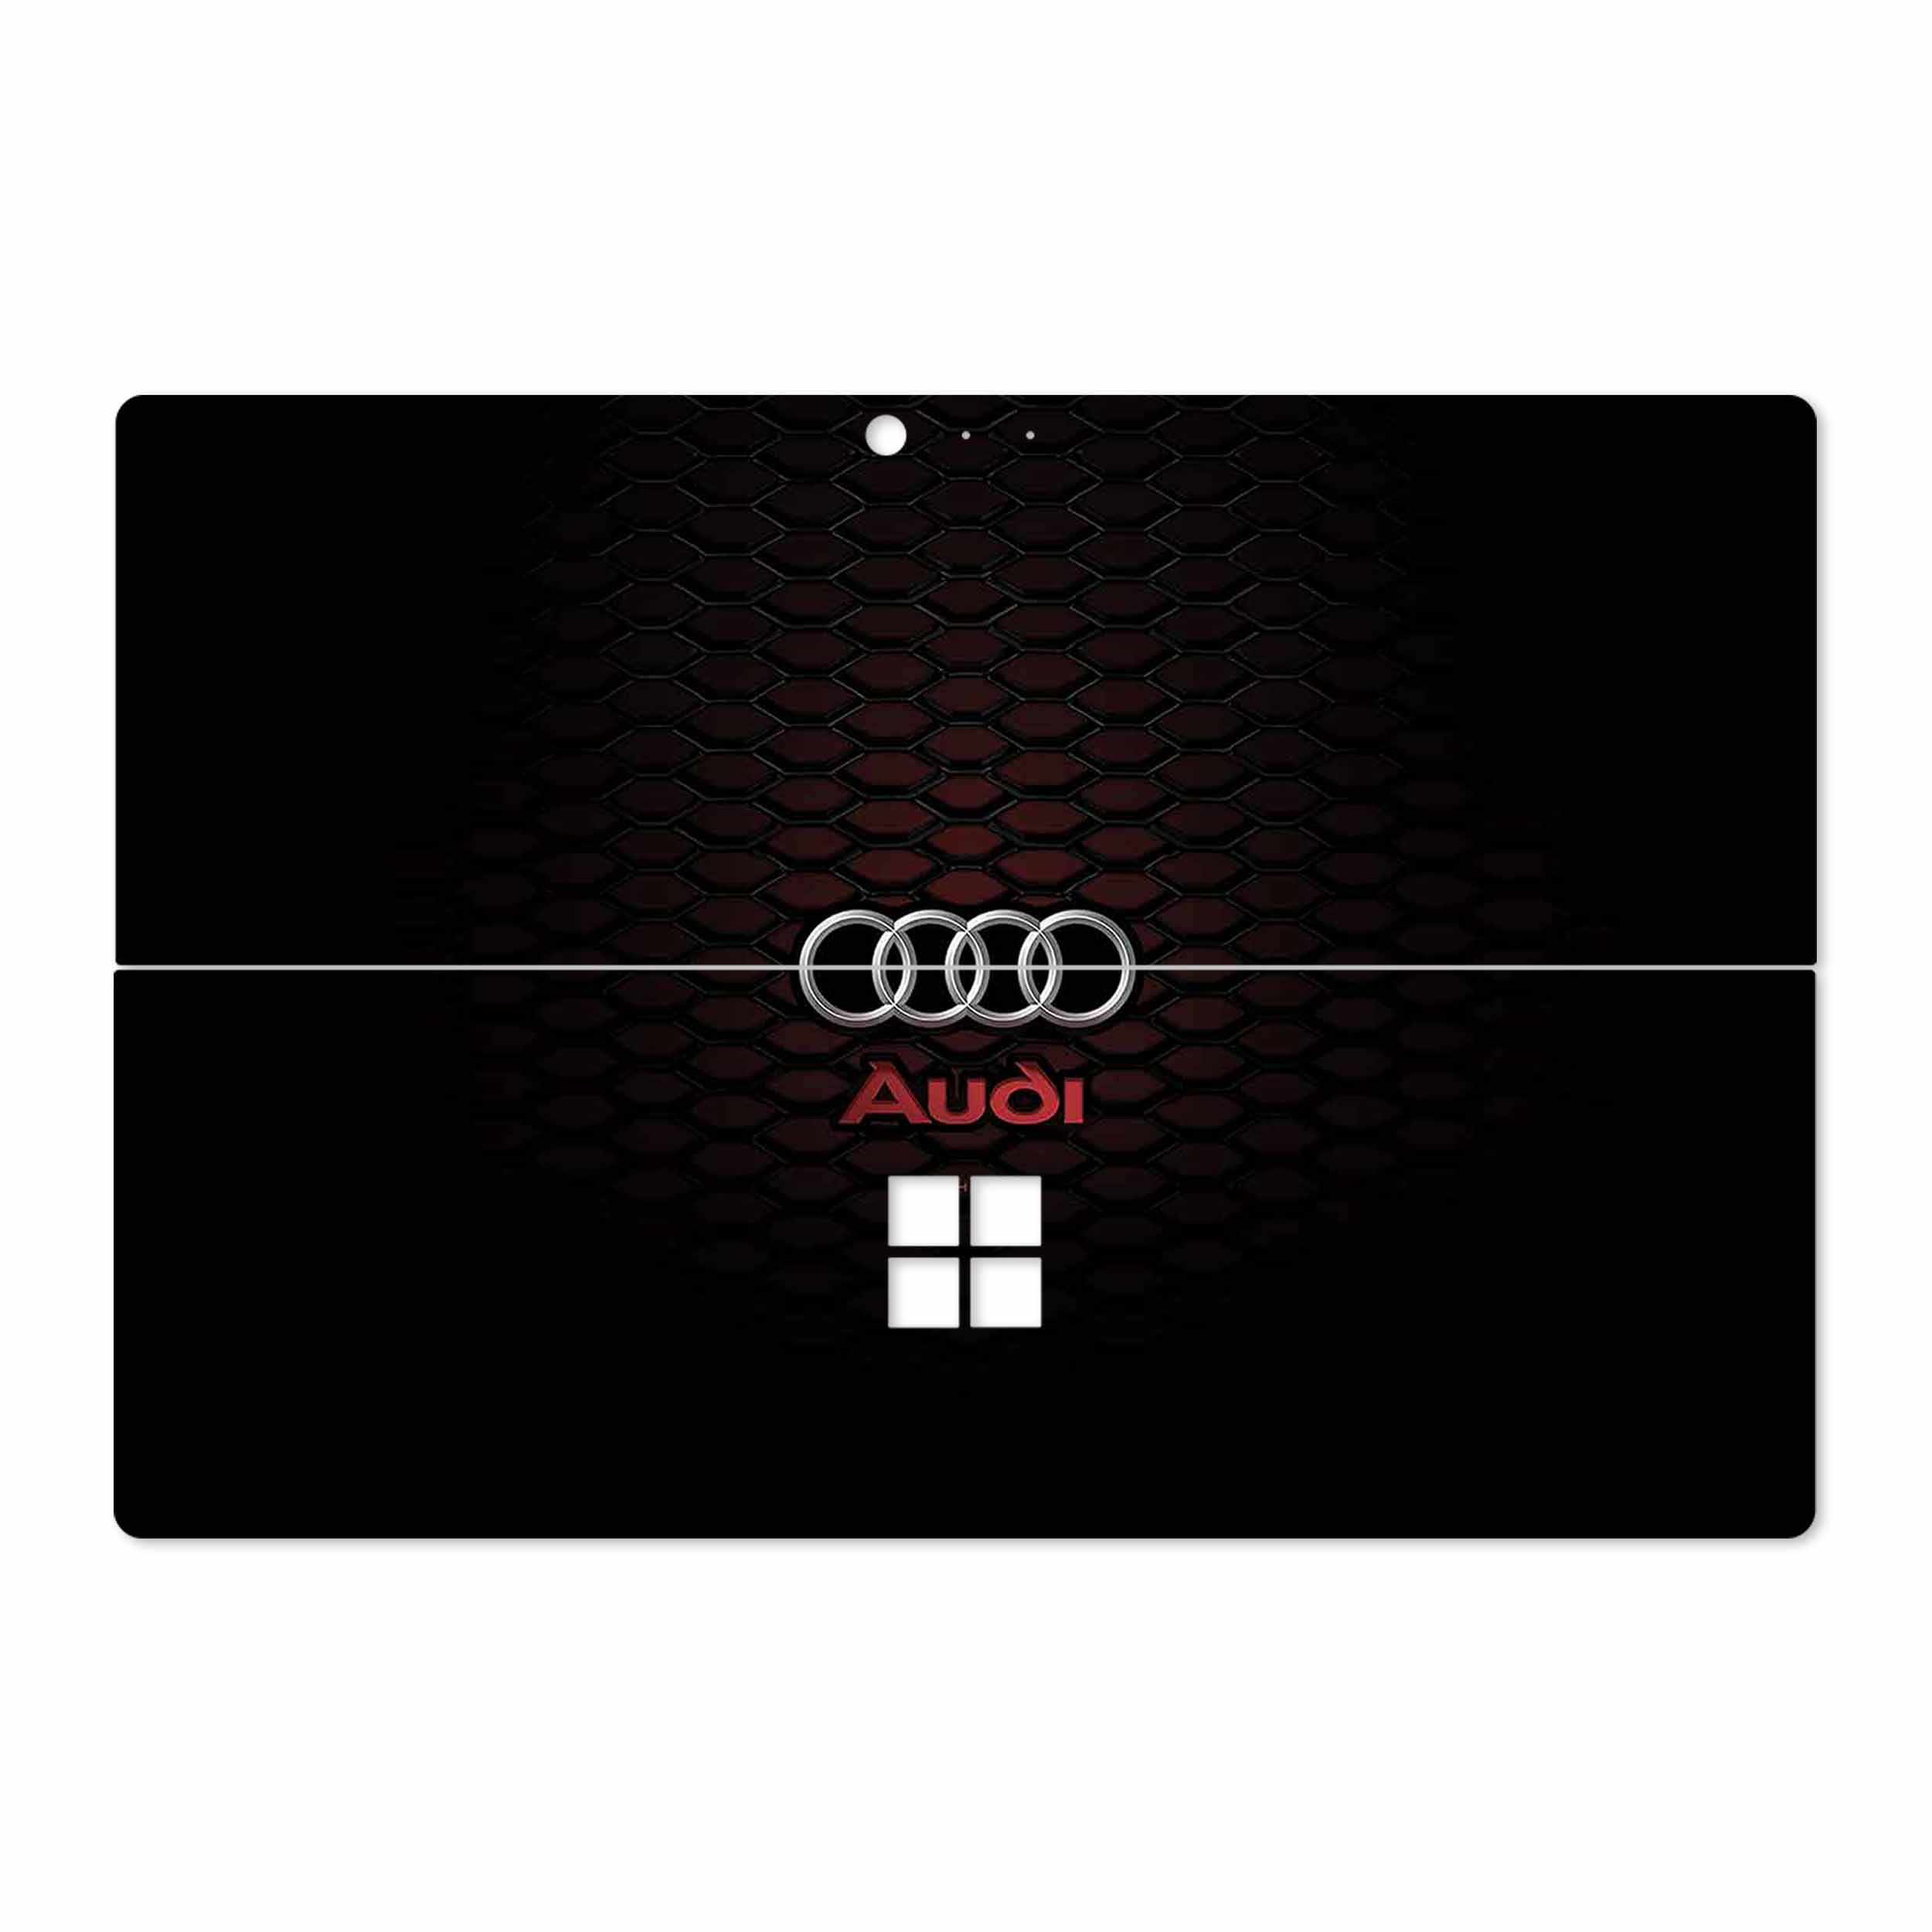 برچسب پوششی ماهوت مدل Audi AG مناسب برای تبلت مایکروسافت Surface Pro 4 2015